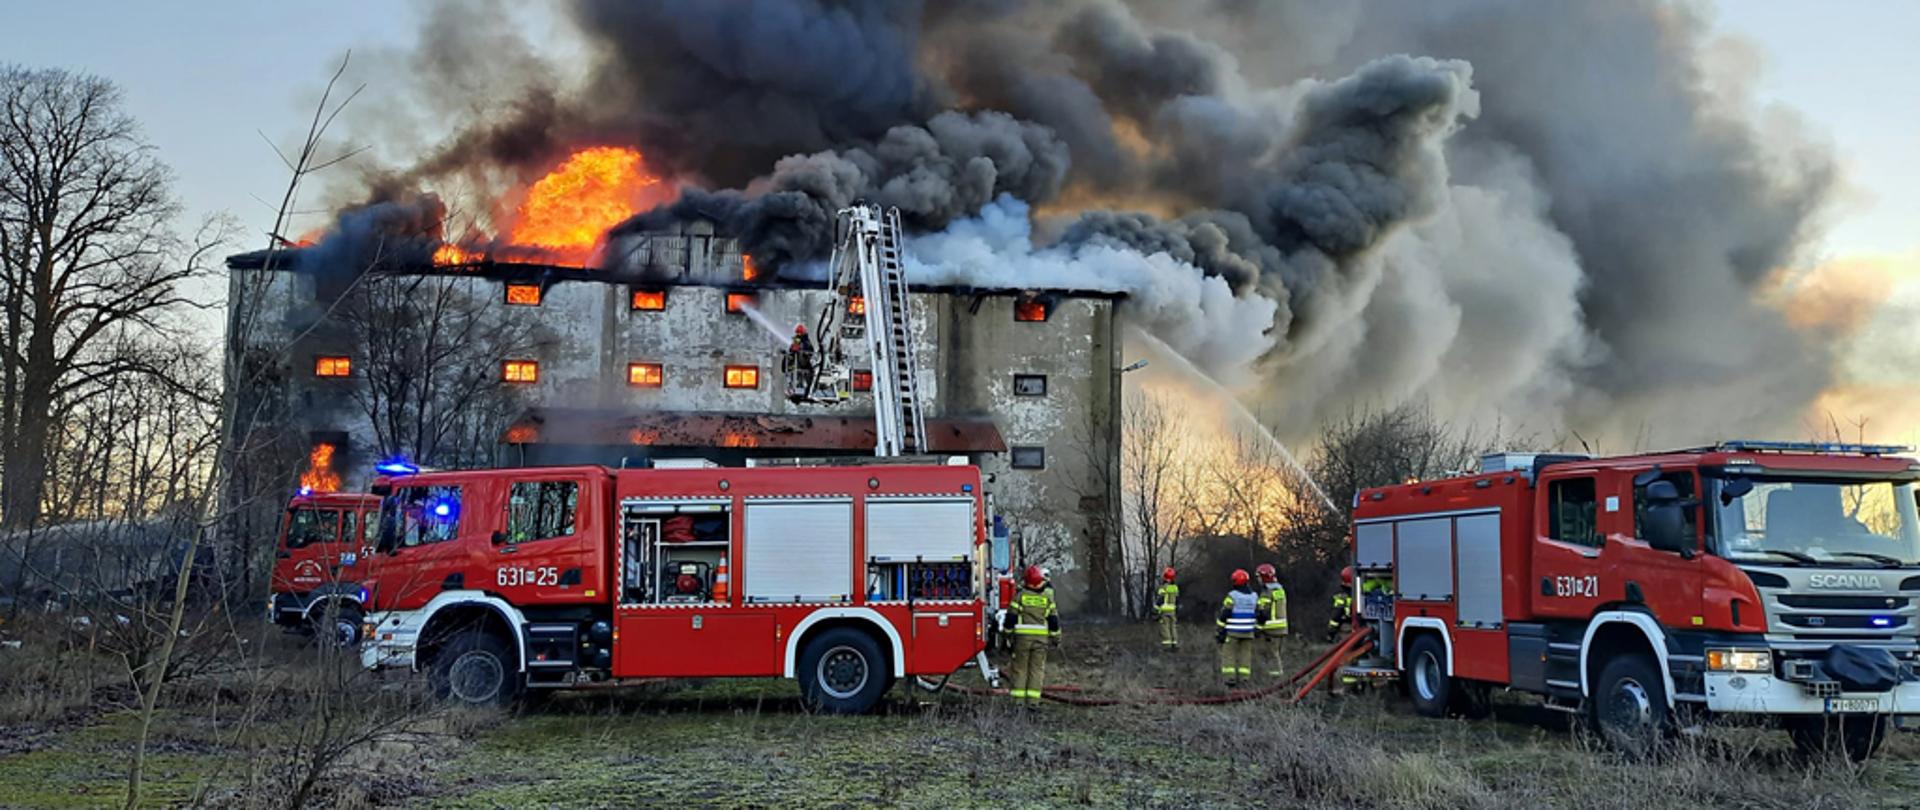 Na zdjęciu widoczny budynek po dawnym spichlerzu w całości objęty pożarem. Nad dachem widoczny ogień i chmura czarnego dymu. Przed budynkiem swoją dwa samochody strażackie i kilku strażaków. Widoczne ramie podnośnika hydraulicznego, z kosza którego strażacy również gaszą pożar.